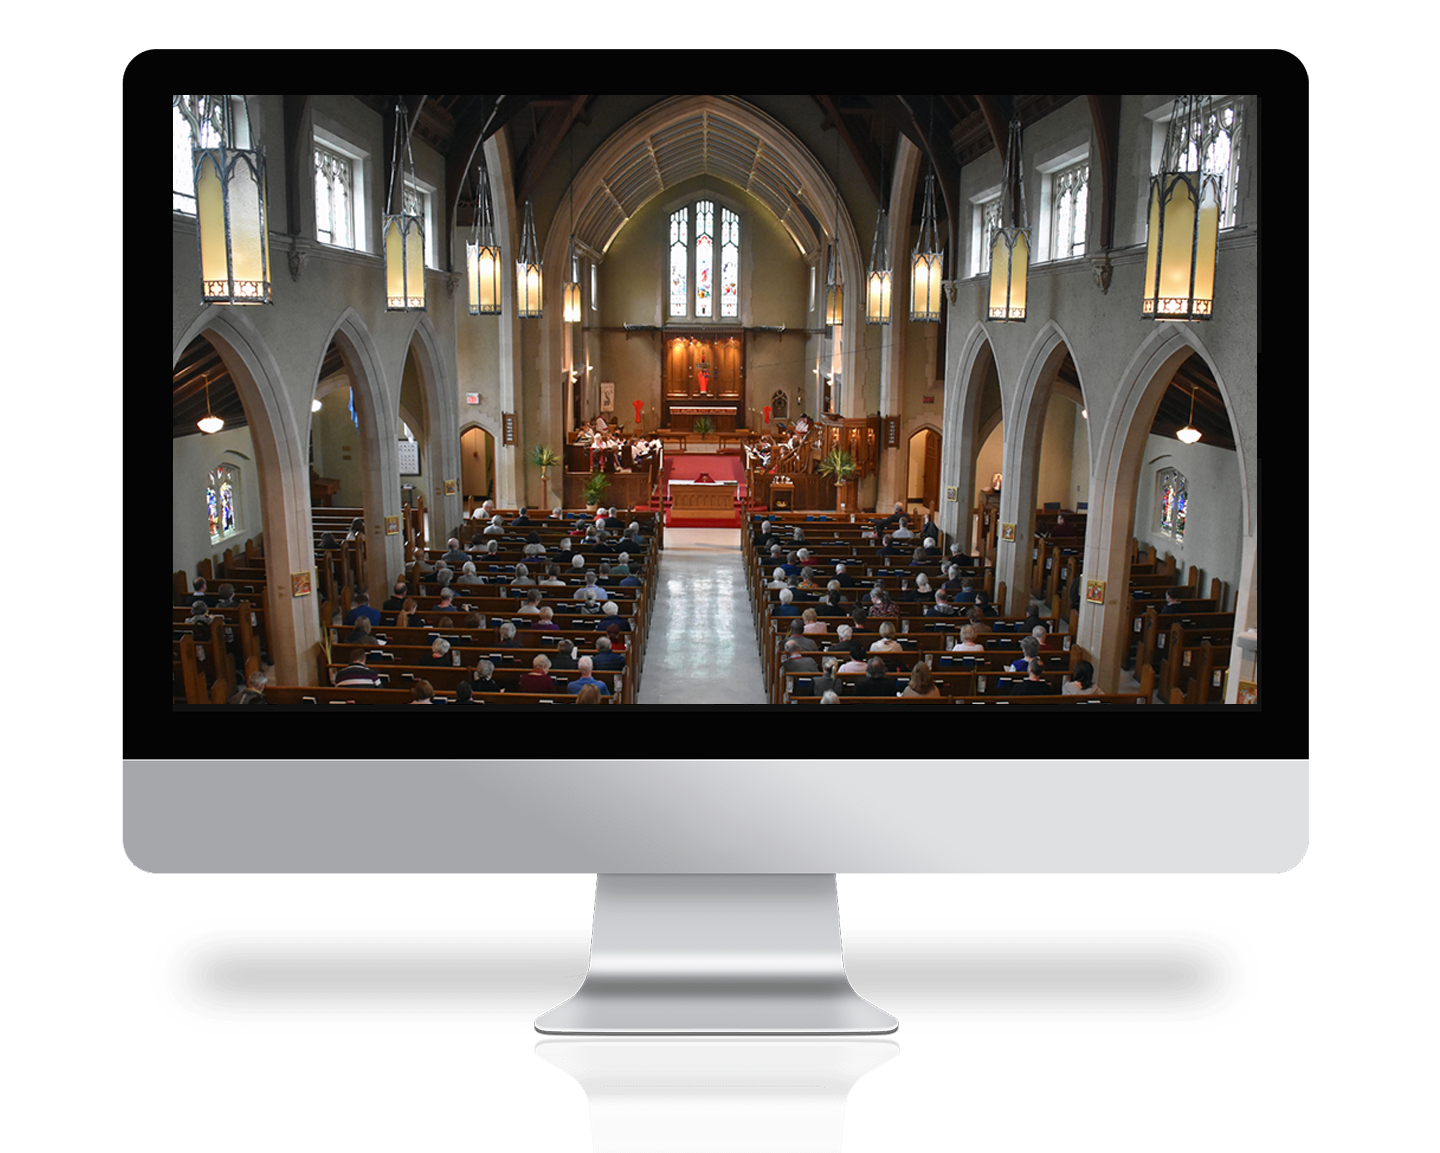 St. Matthew's church service on a computer screen